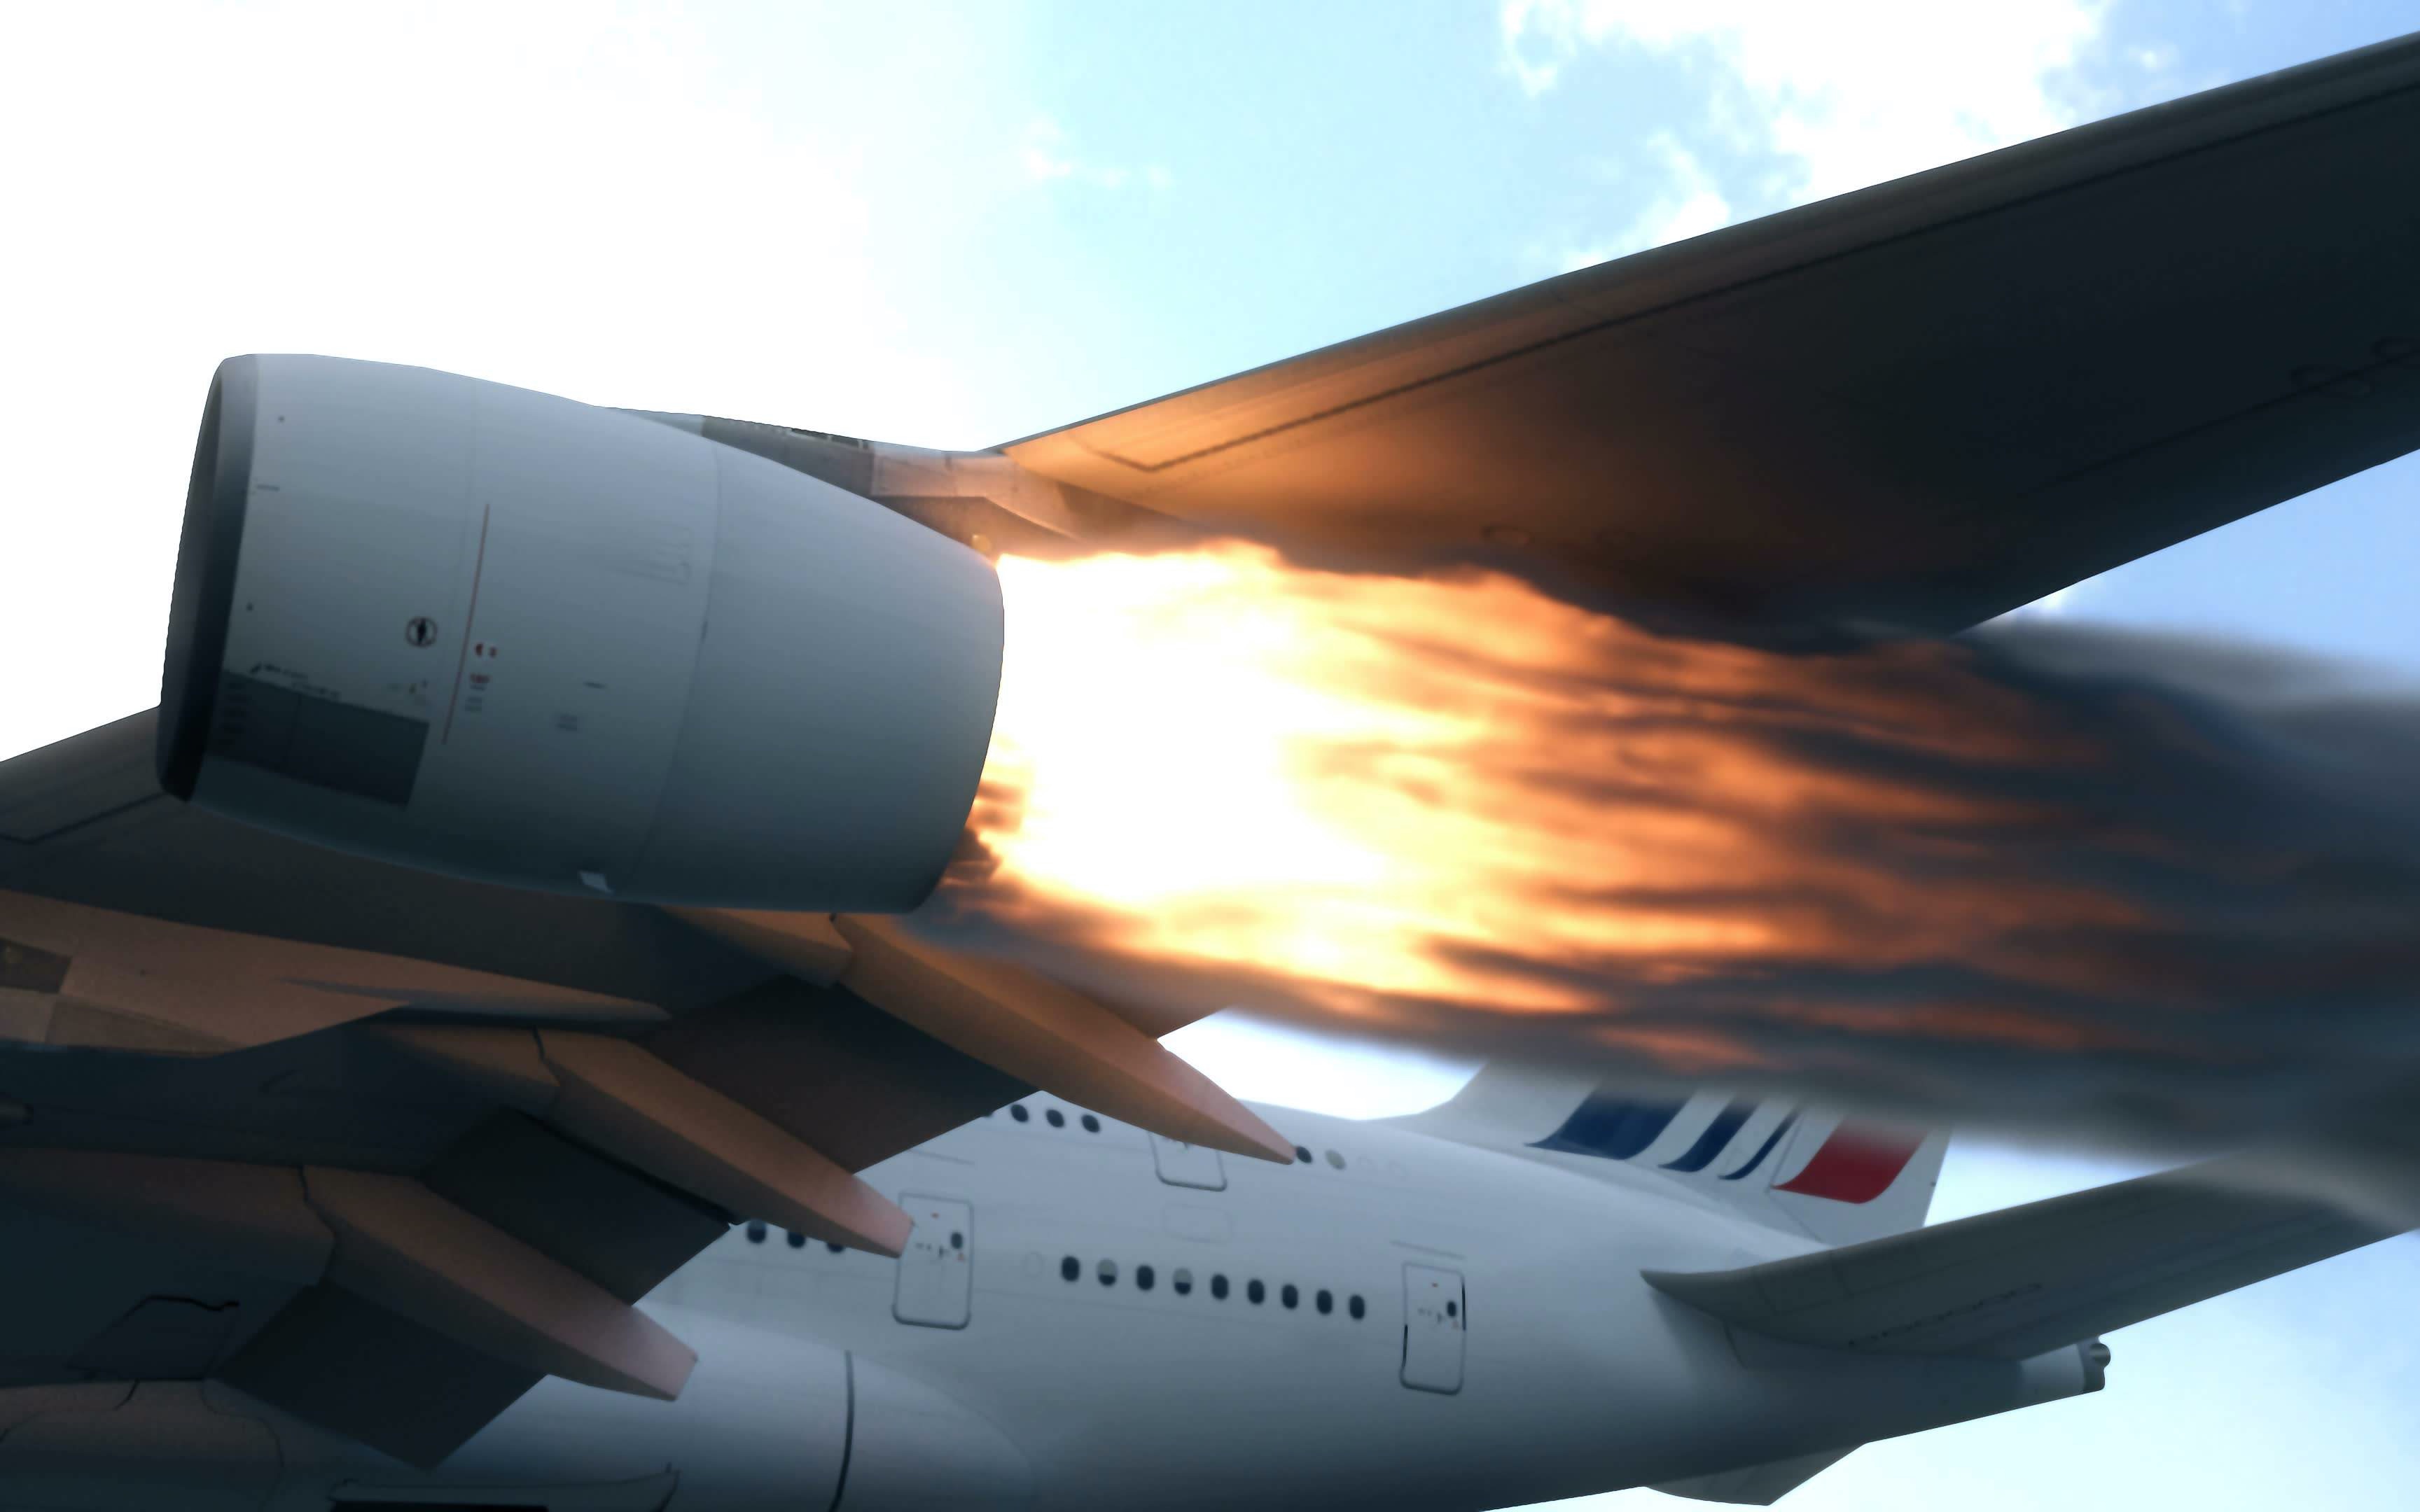 飞机发动机起火图片